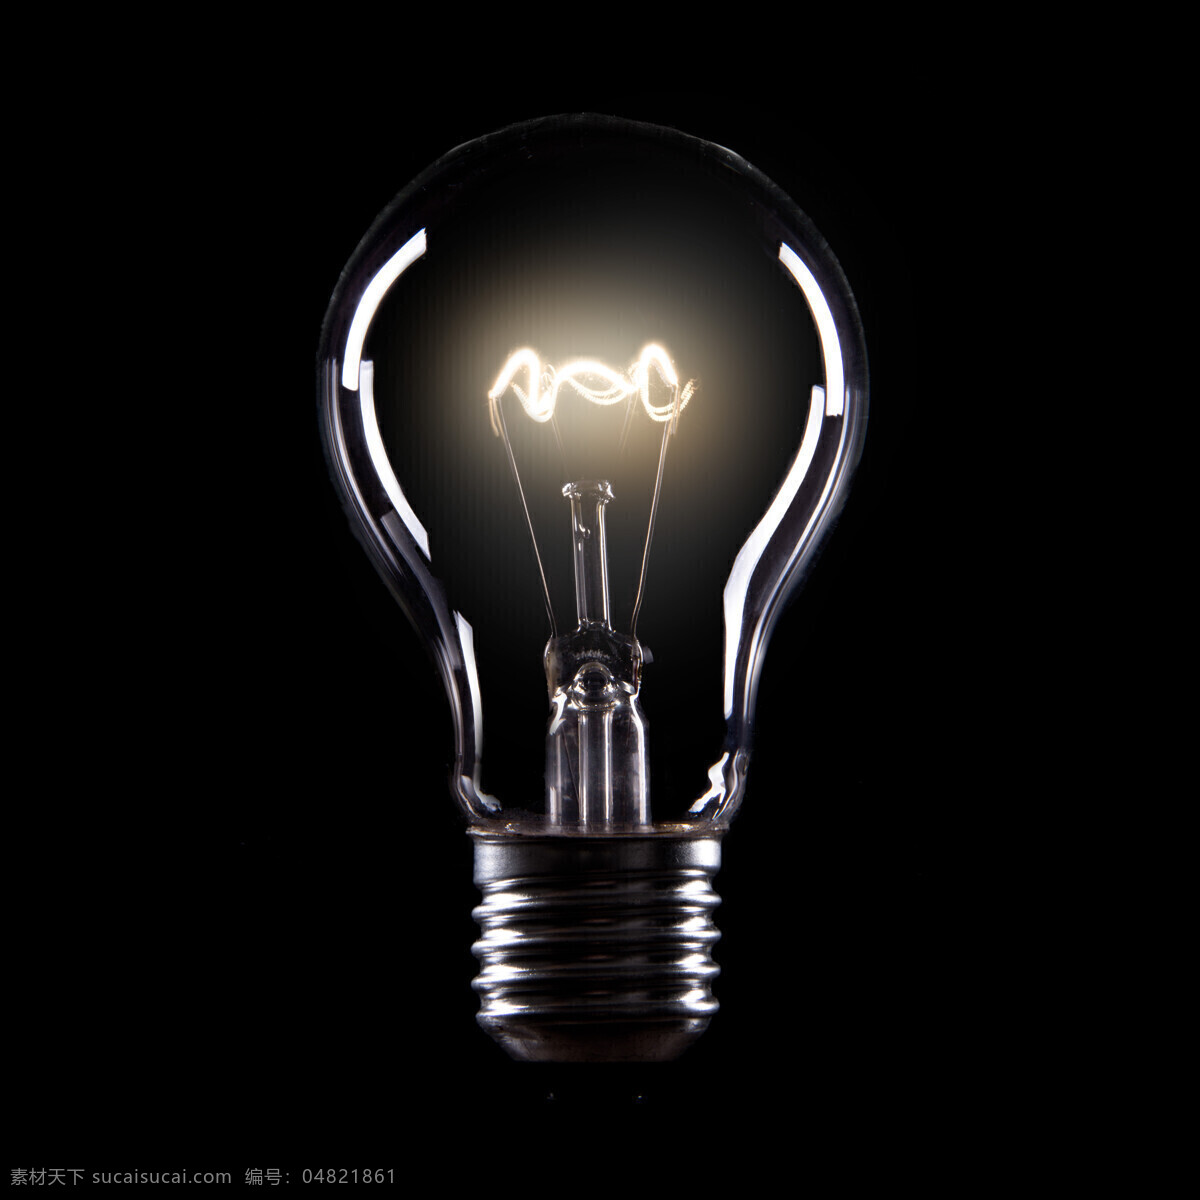 发光的灯炮 灯炮 节能灯 家用电器 节能 环保 科技 其他类别 生活百科 黑色